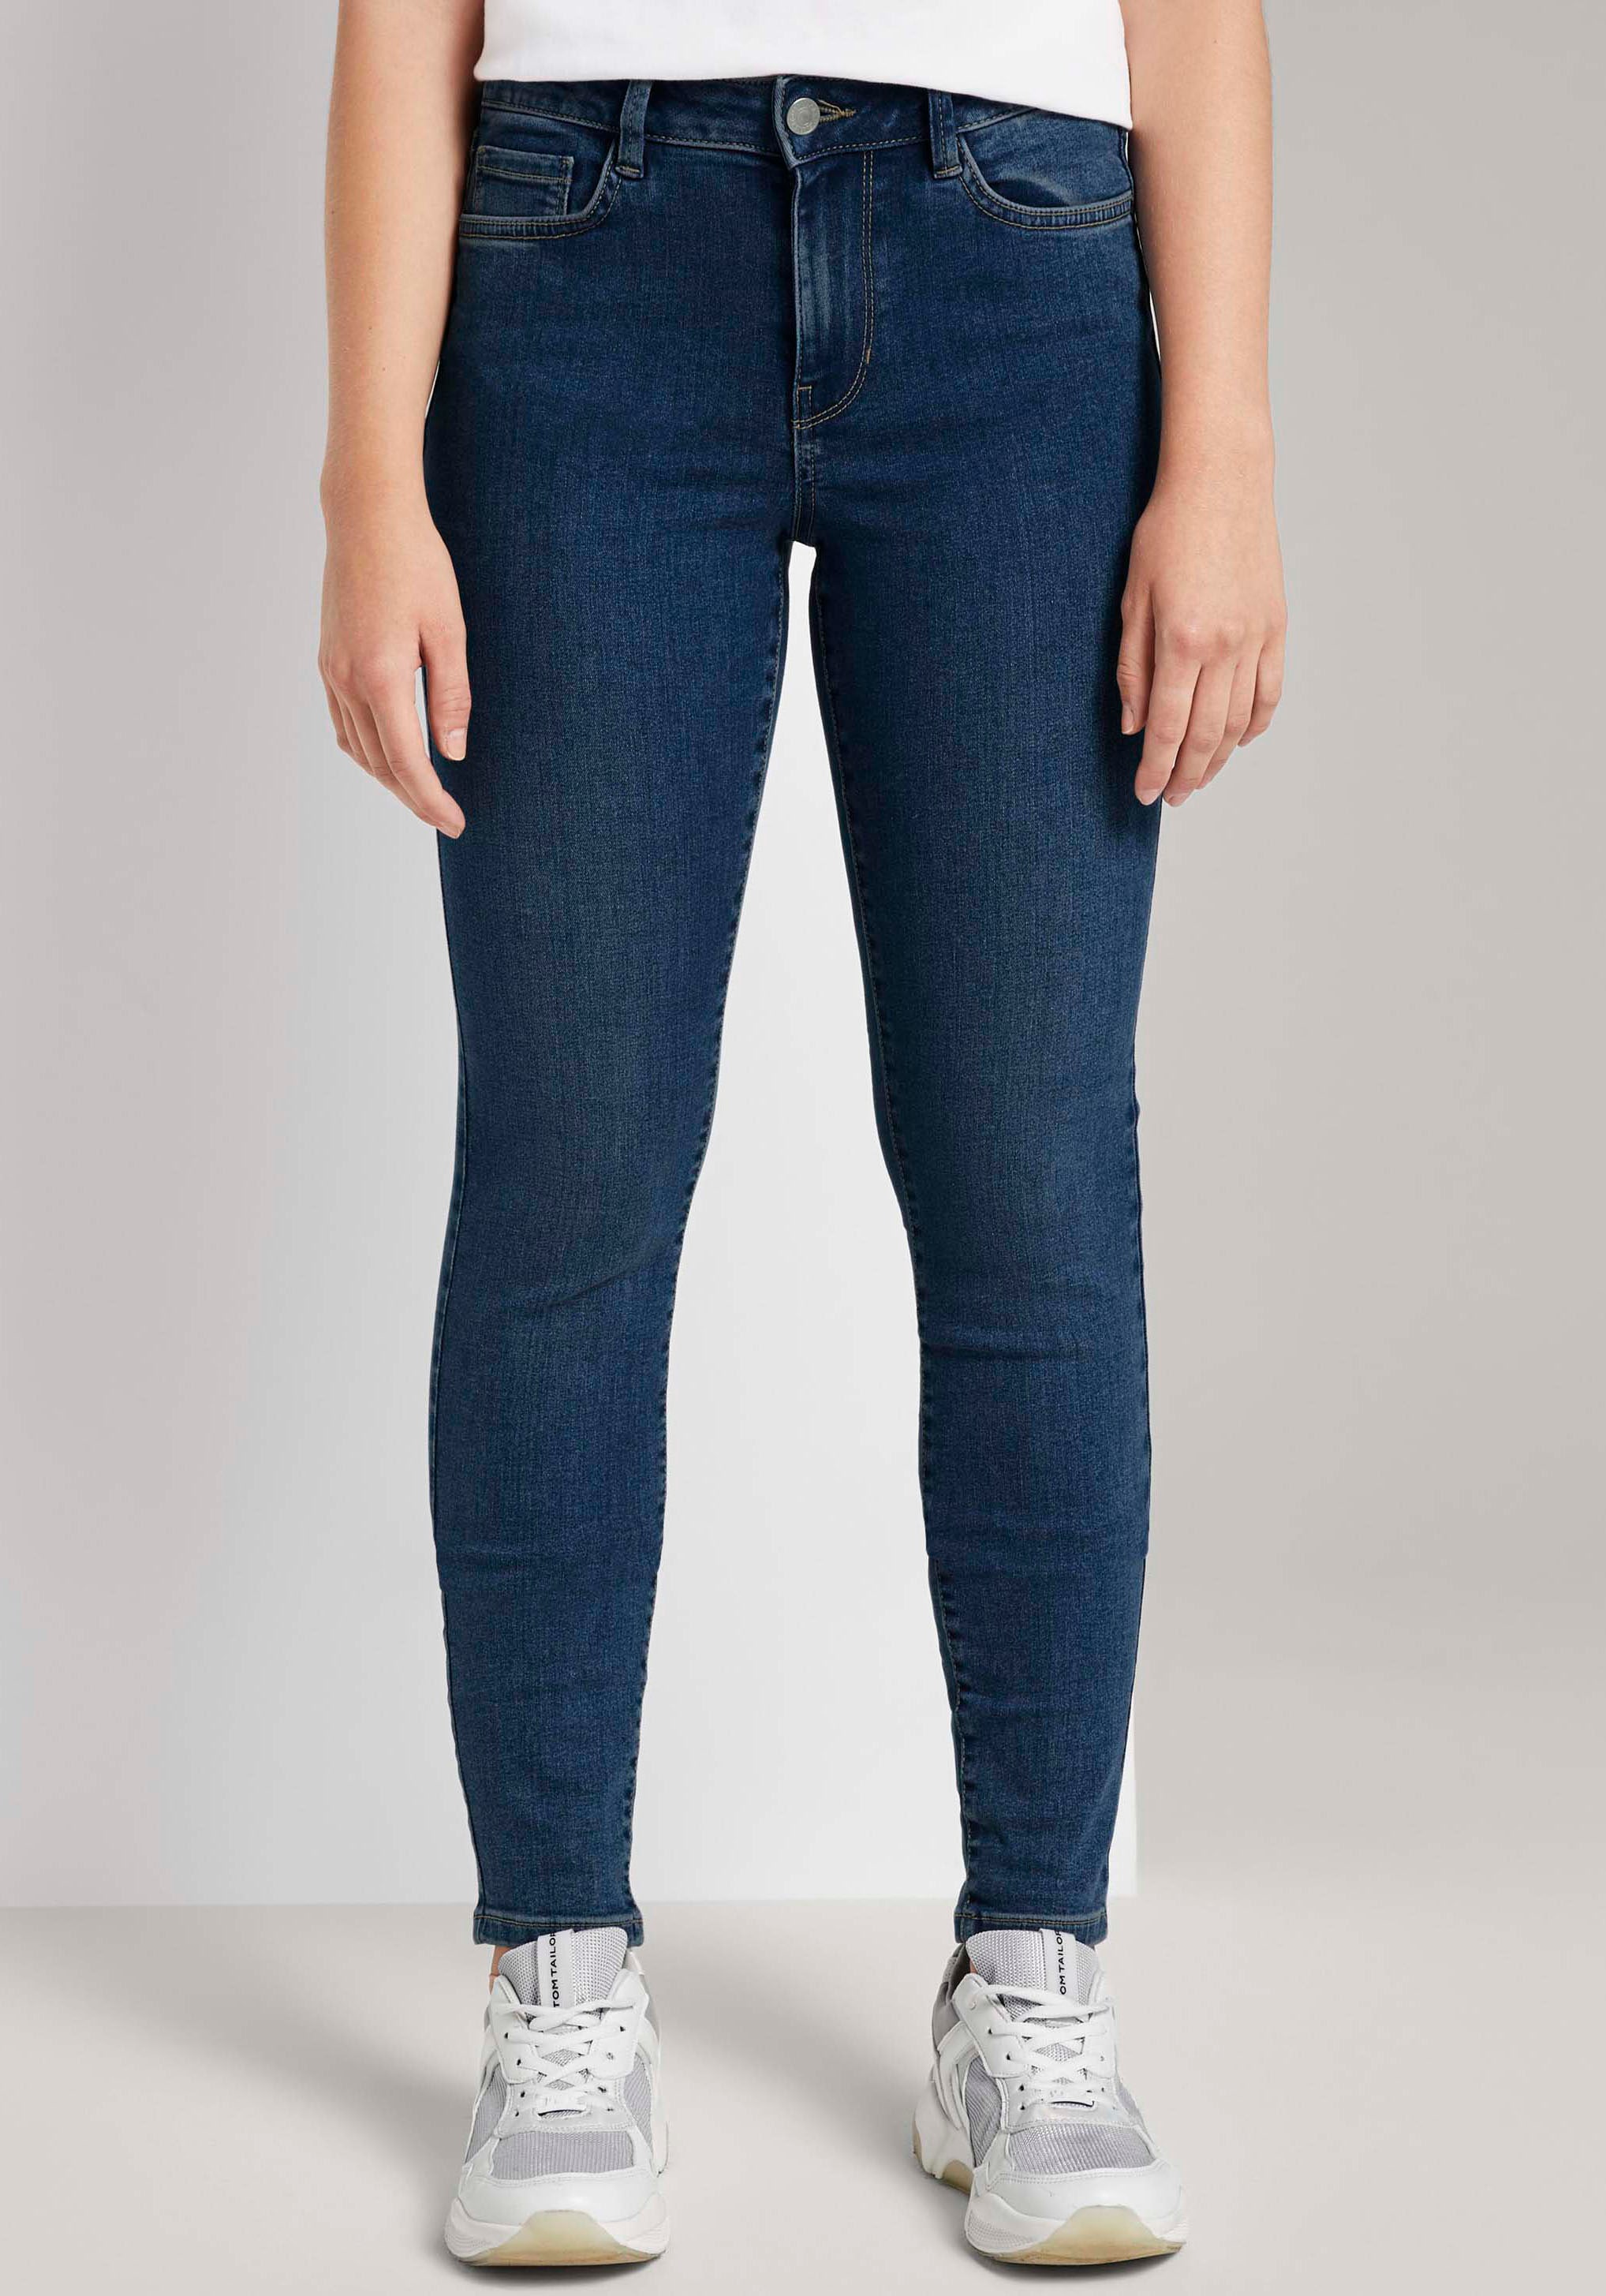 ♕ TOM TAILOR Denim im versandkostenfrei Schnitt kaufen 5-Pocket Slim-fit-Jeans